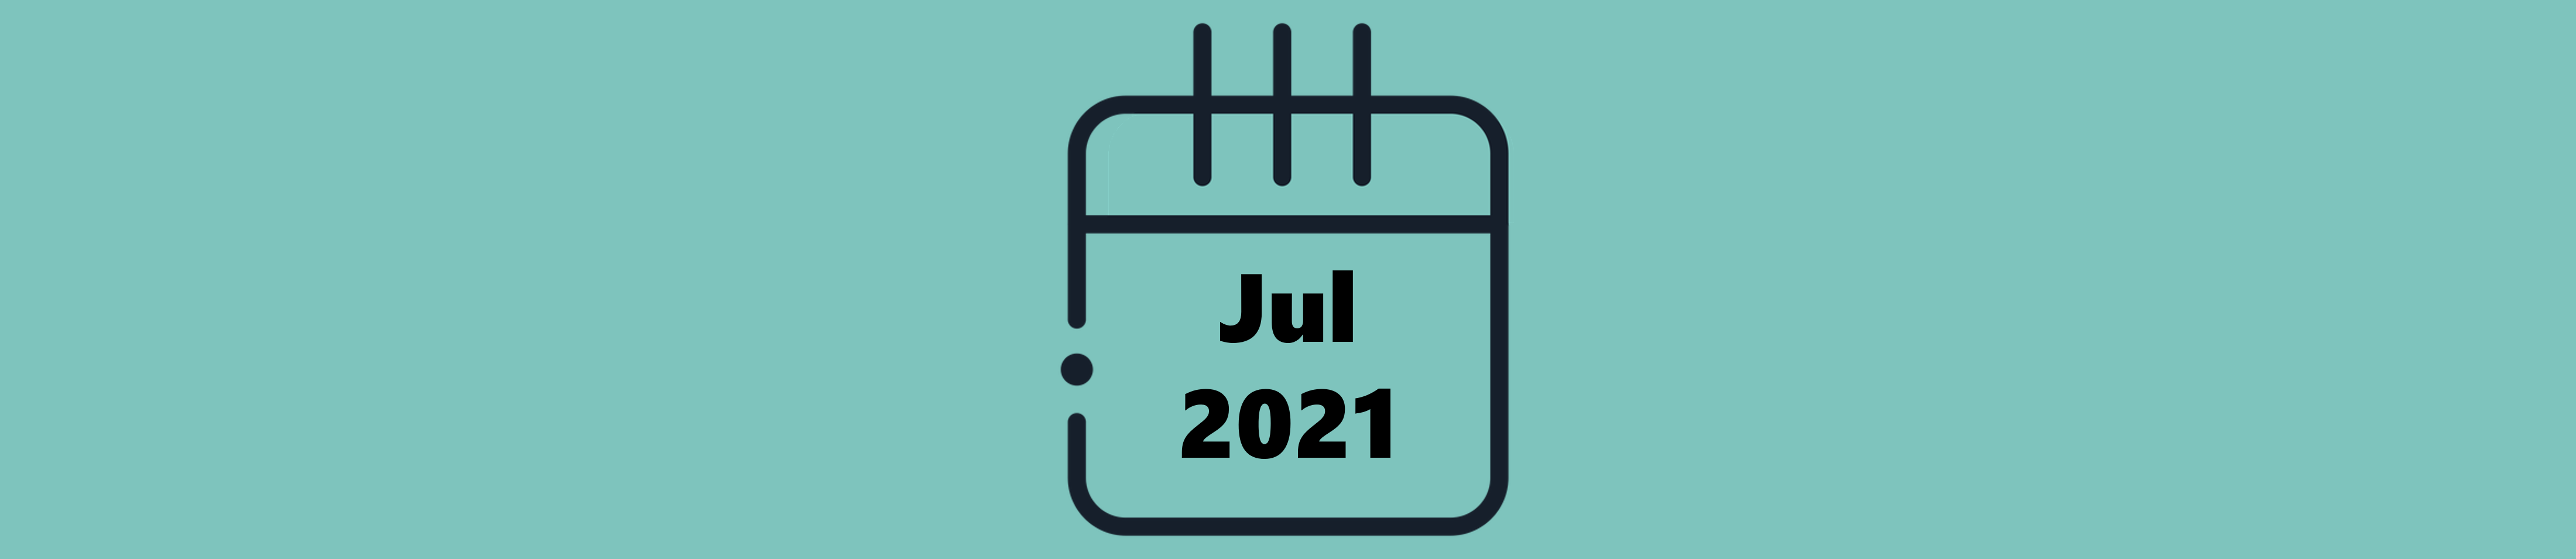 Indicações do Mês de Julho (2021)